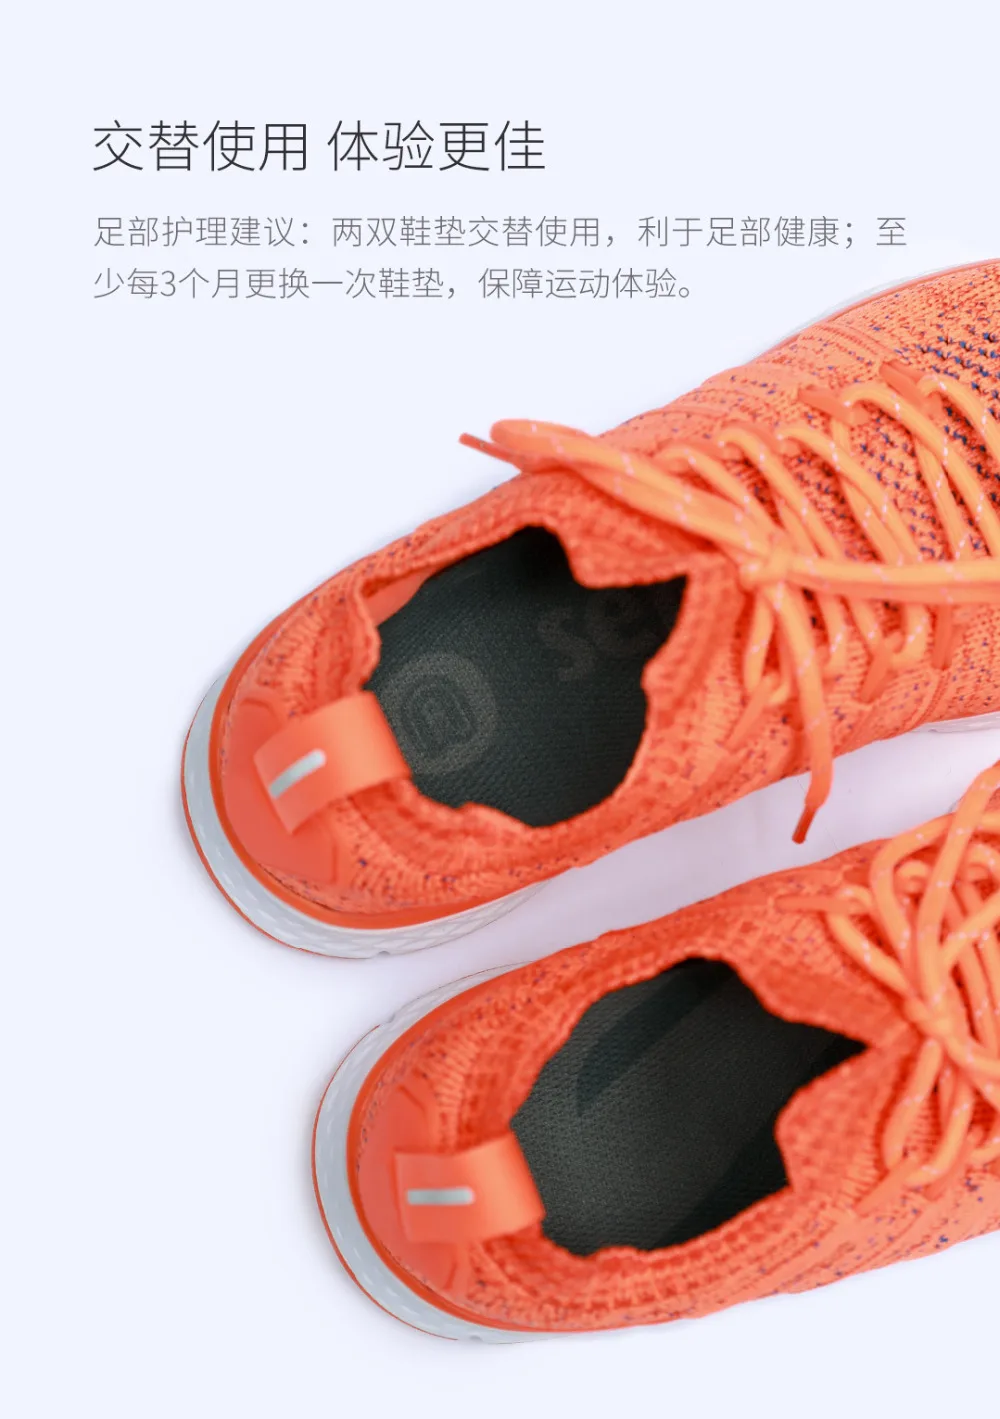 Xiaomi youpin амортизирующая Беговая стелька для мужчин и женщин спортивная не скользящая амортизирующая Беговая стелька динамическая защита от отскока